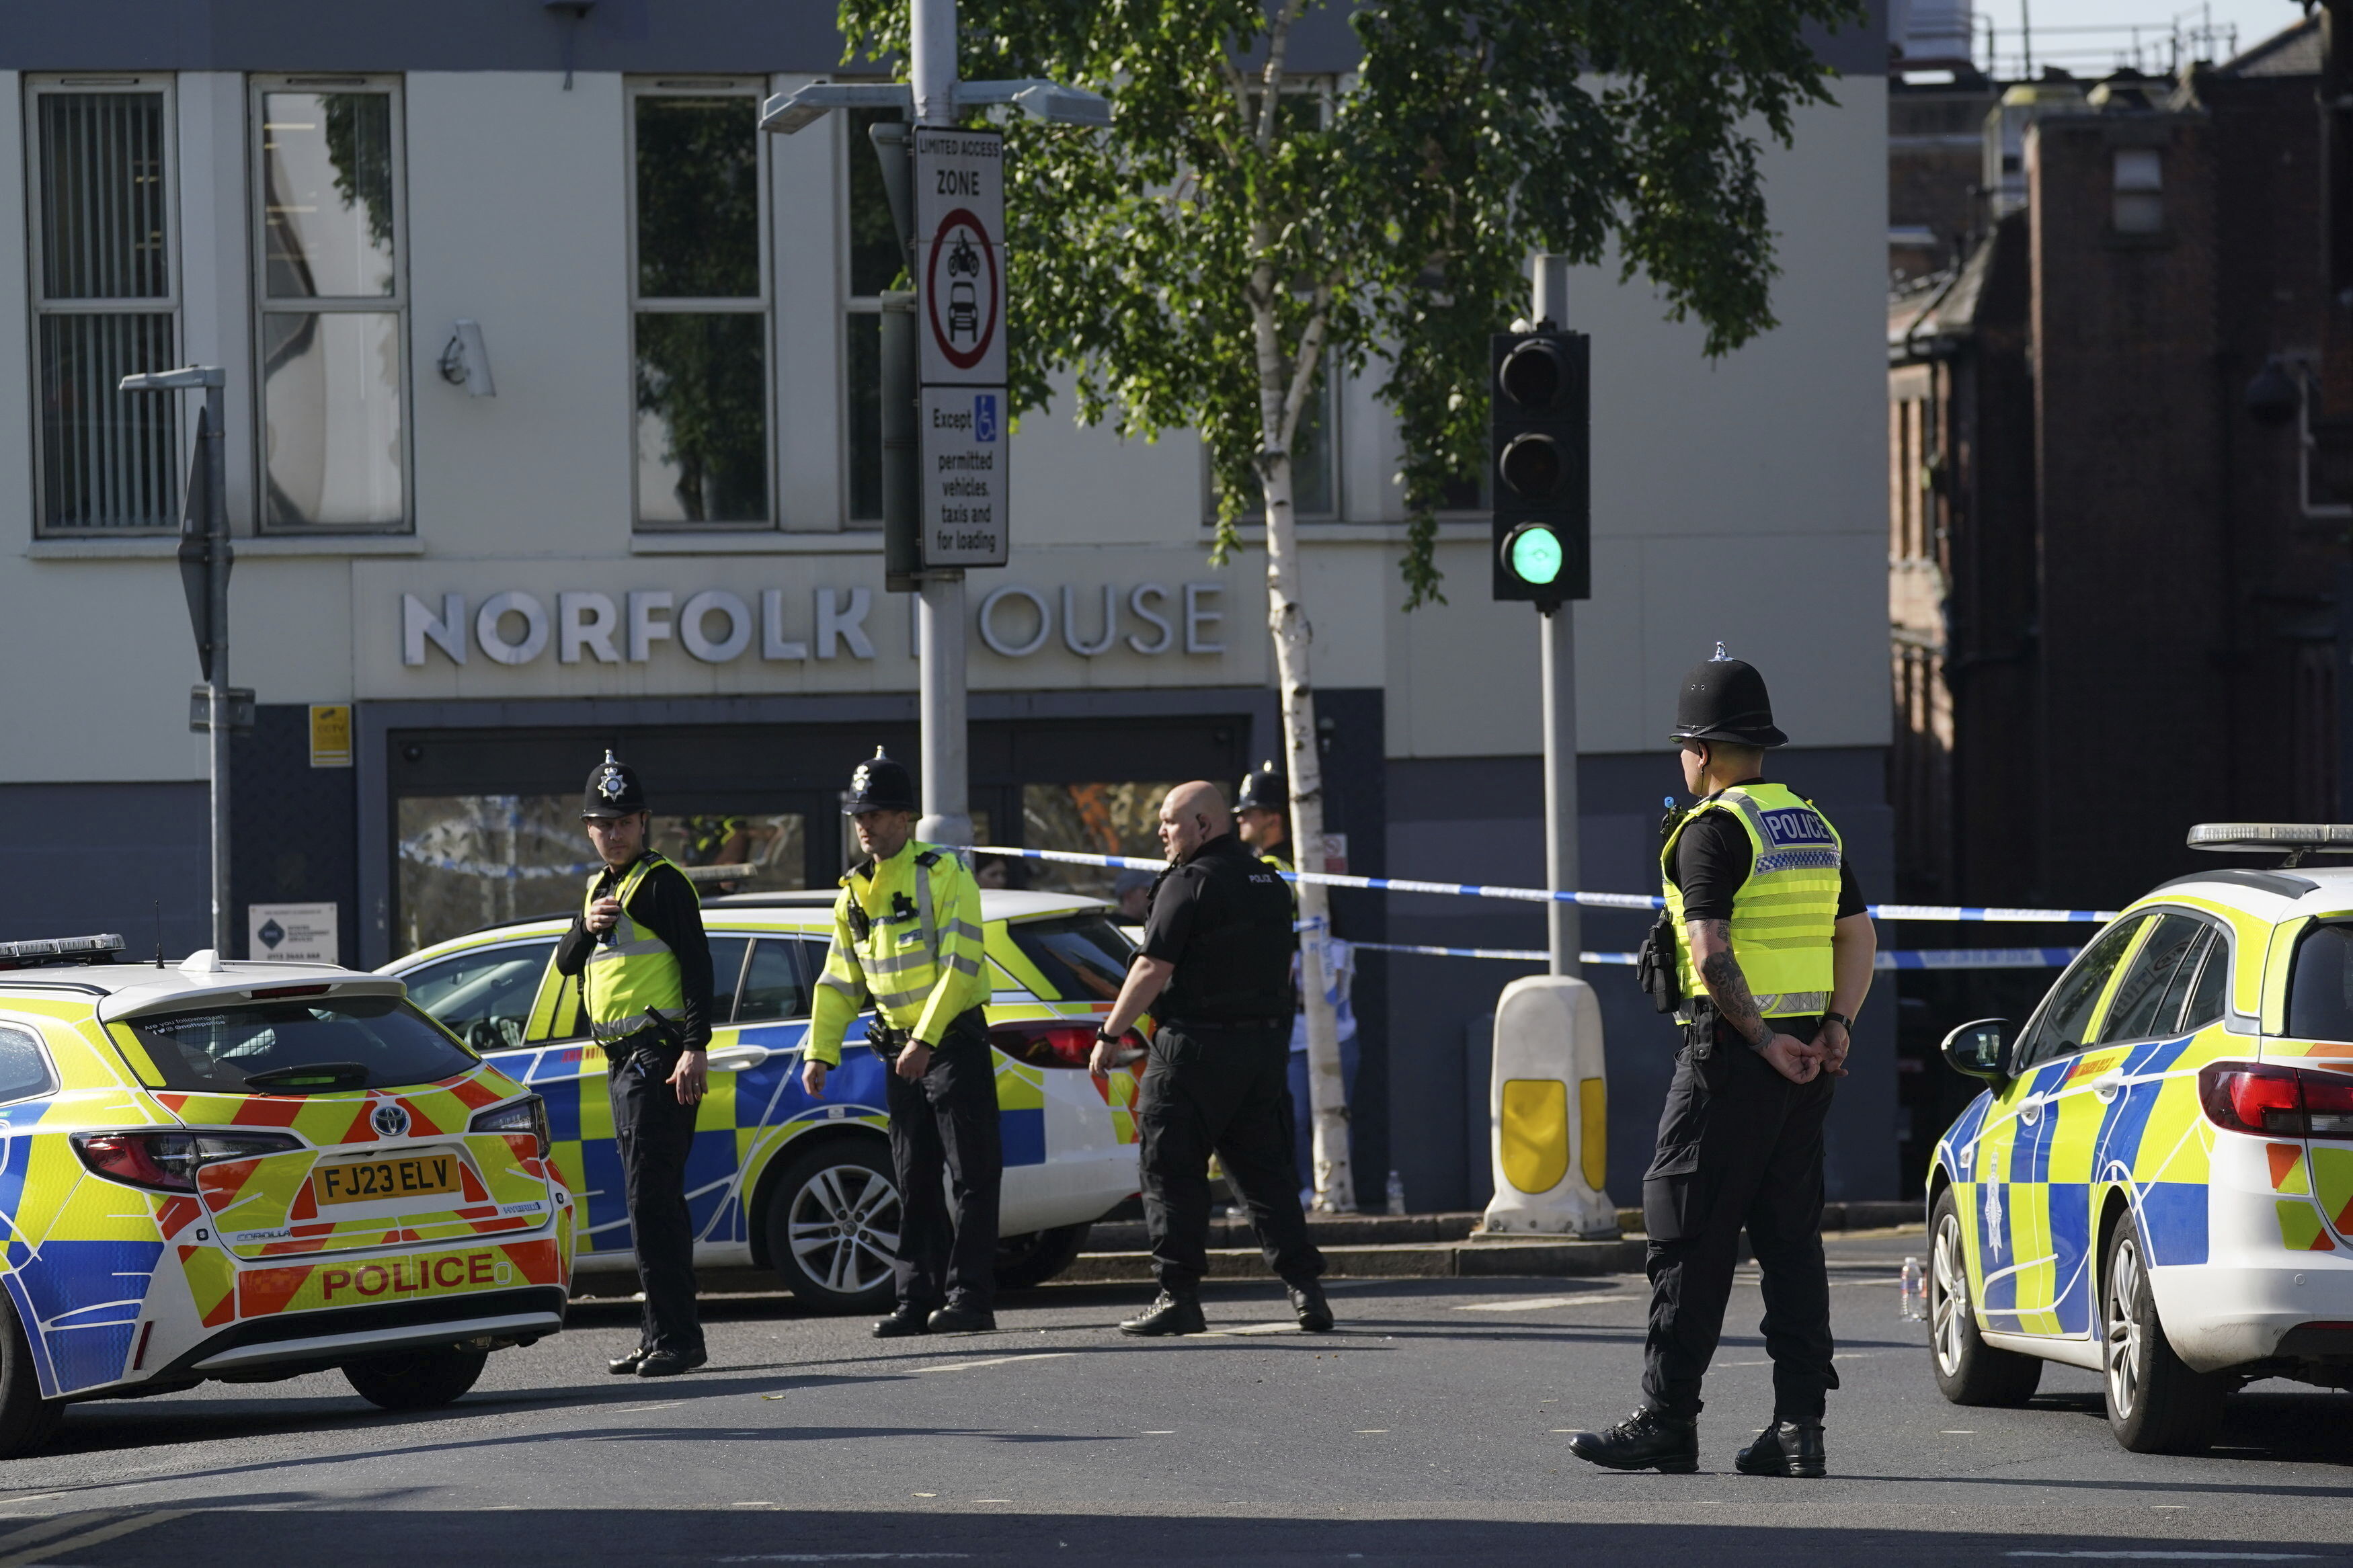 Policías bloquean una calle en Nottingham. Tres personas murieron y otras tres fueron golpeadas por una camioneta en incidentes relacionados, según indicó el martes la policía. (Jacob King/PA via AP)